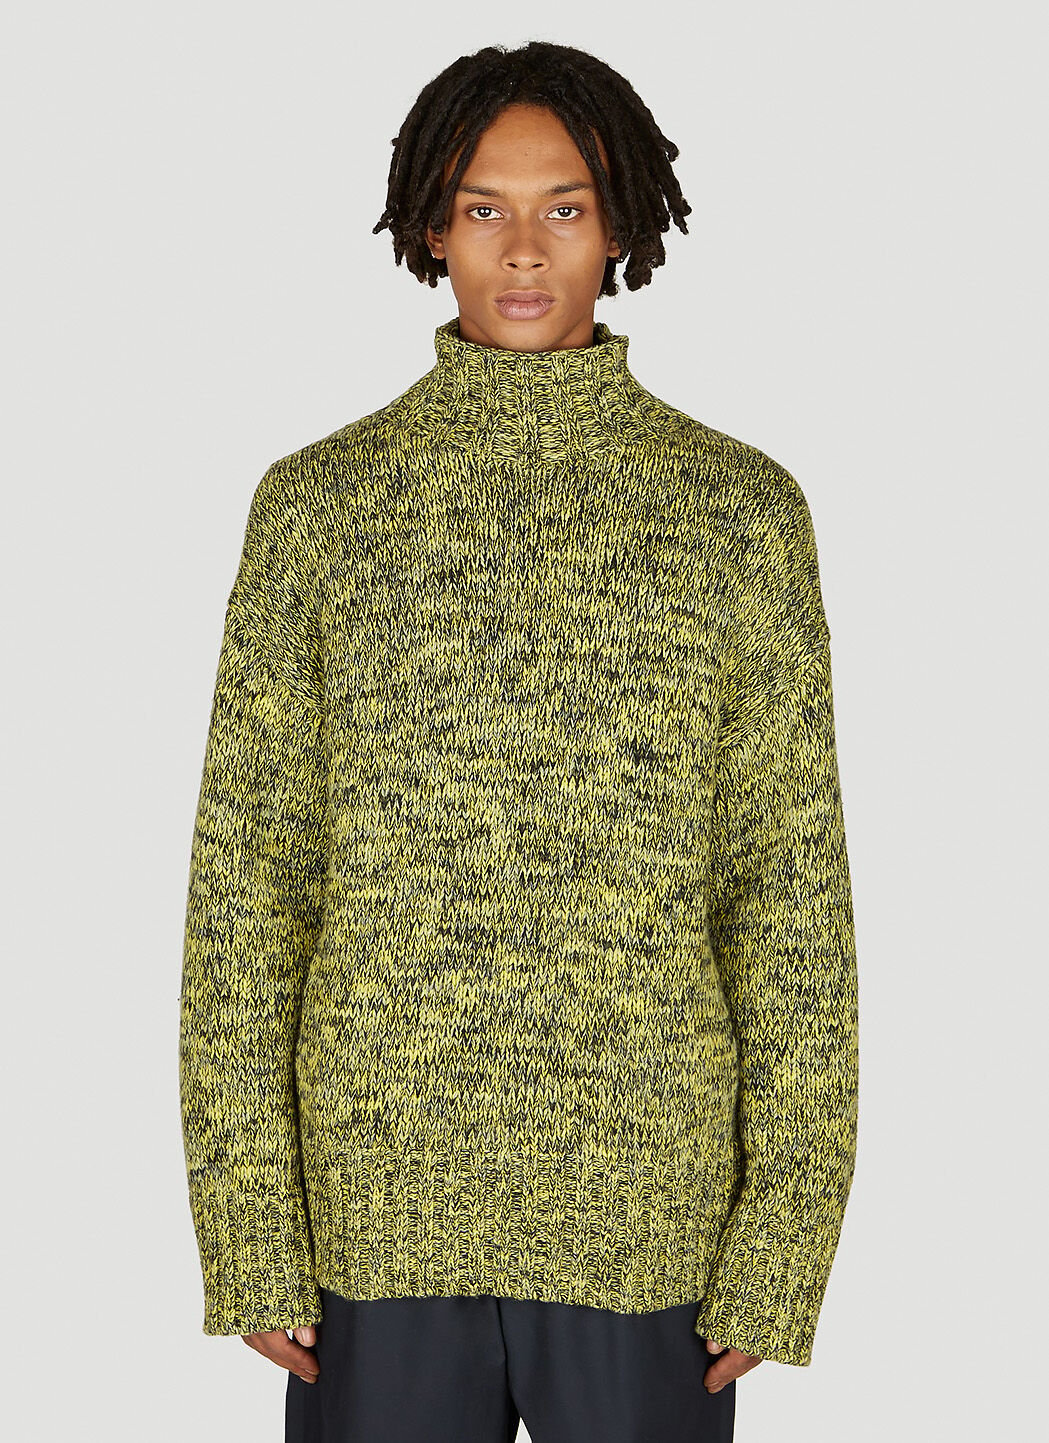 Brain Dead Marled Wool Knit Sweater Green bra0355001